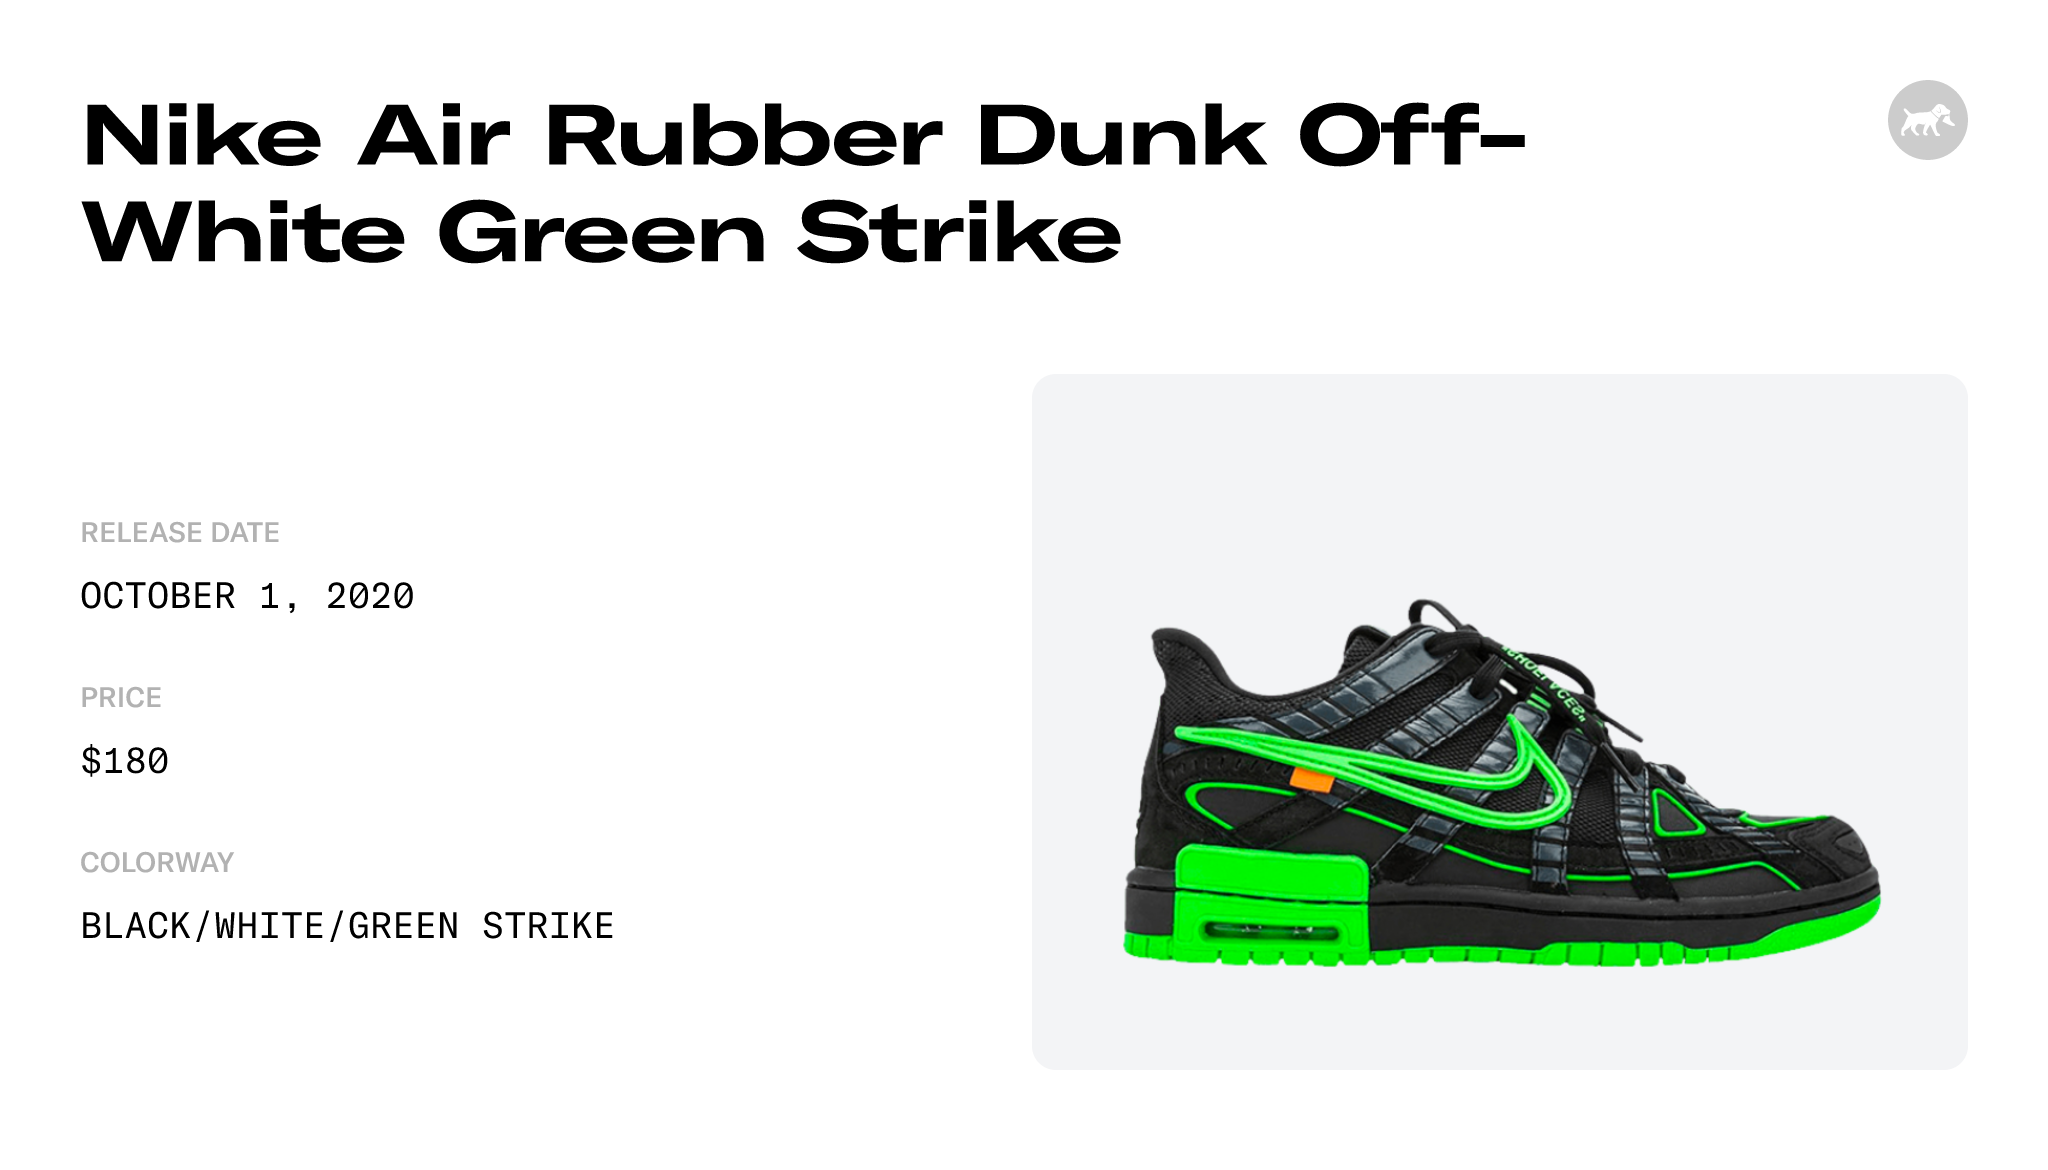 Off-White Nike Rubber Dunk CU6015-001 Release